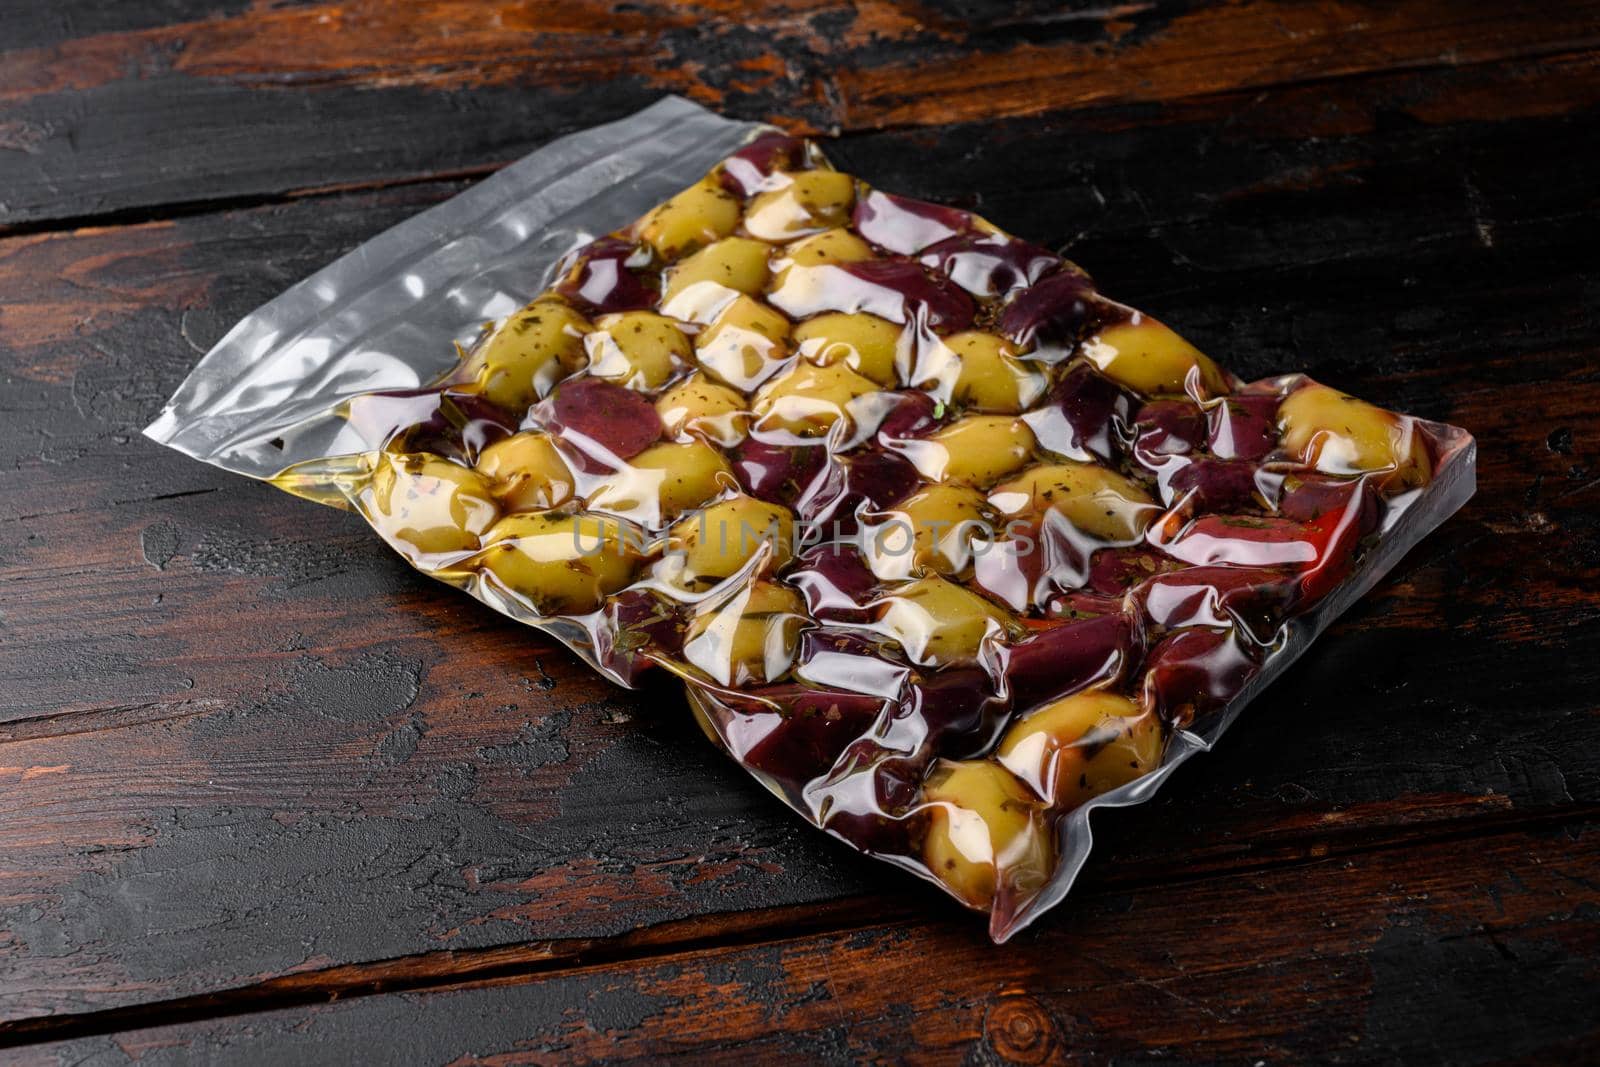 Pickled Olives in Vacuum Sealed Bag set, on old dark wooden table background